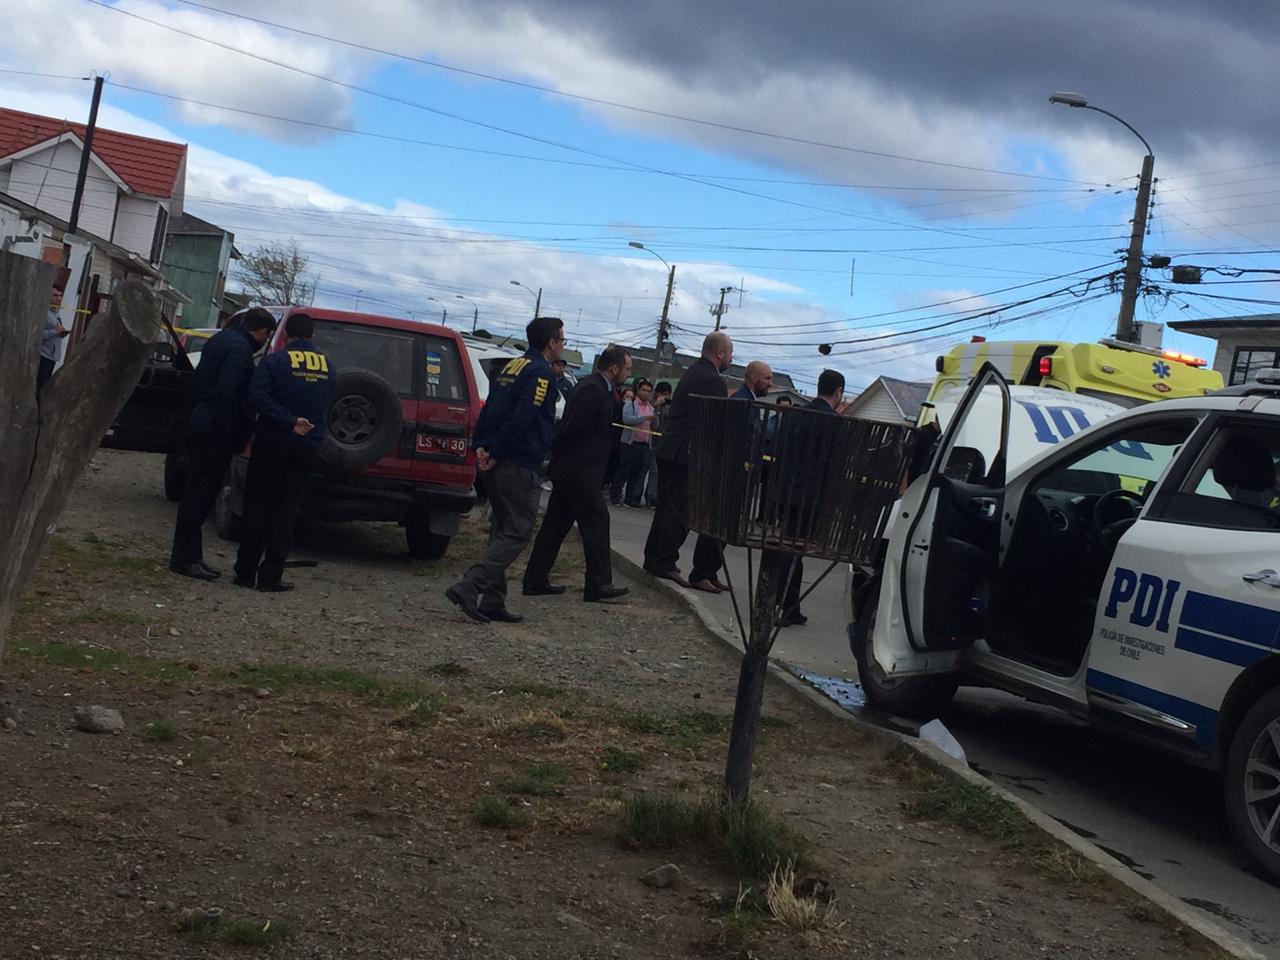 Efectivos de la Brigada Antinarcóticos de la PDI capturan a un individuo tras espectacular operativo en varios sectores de Punta Arenas